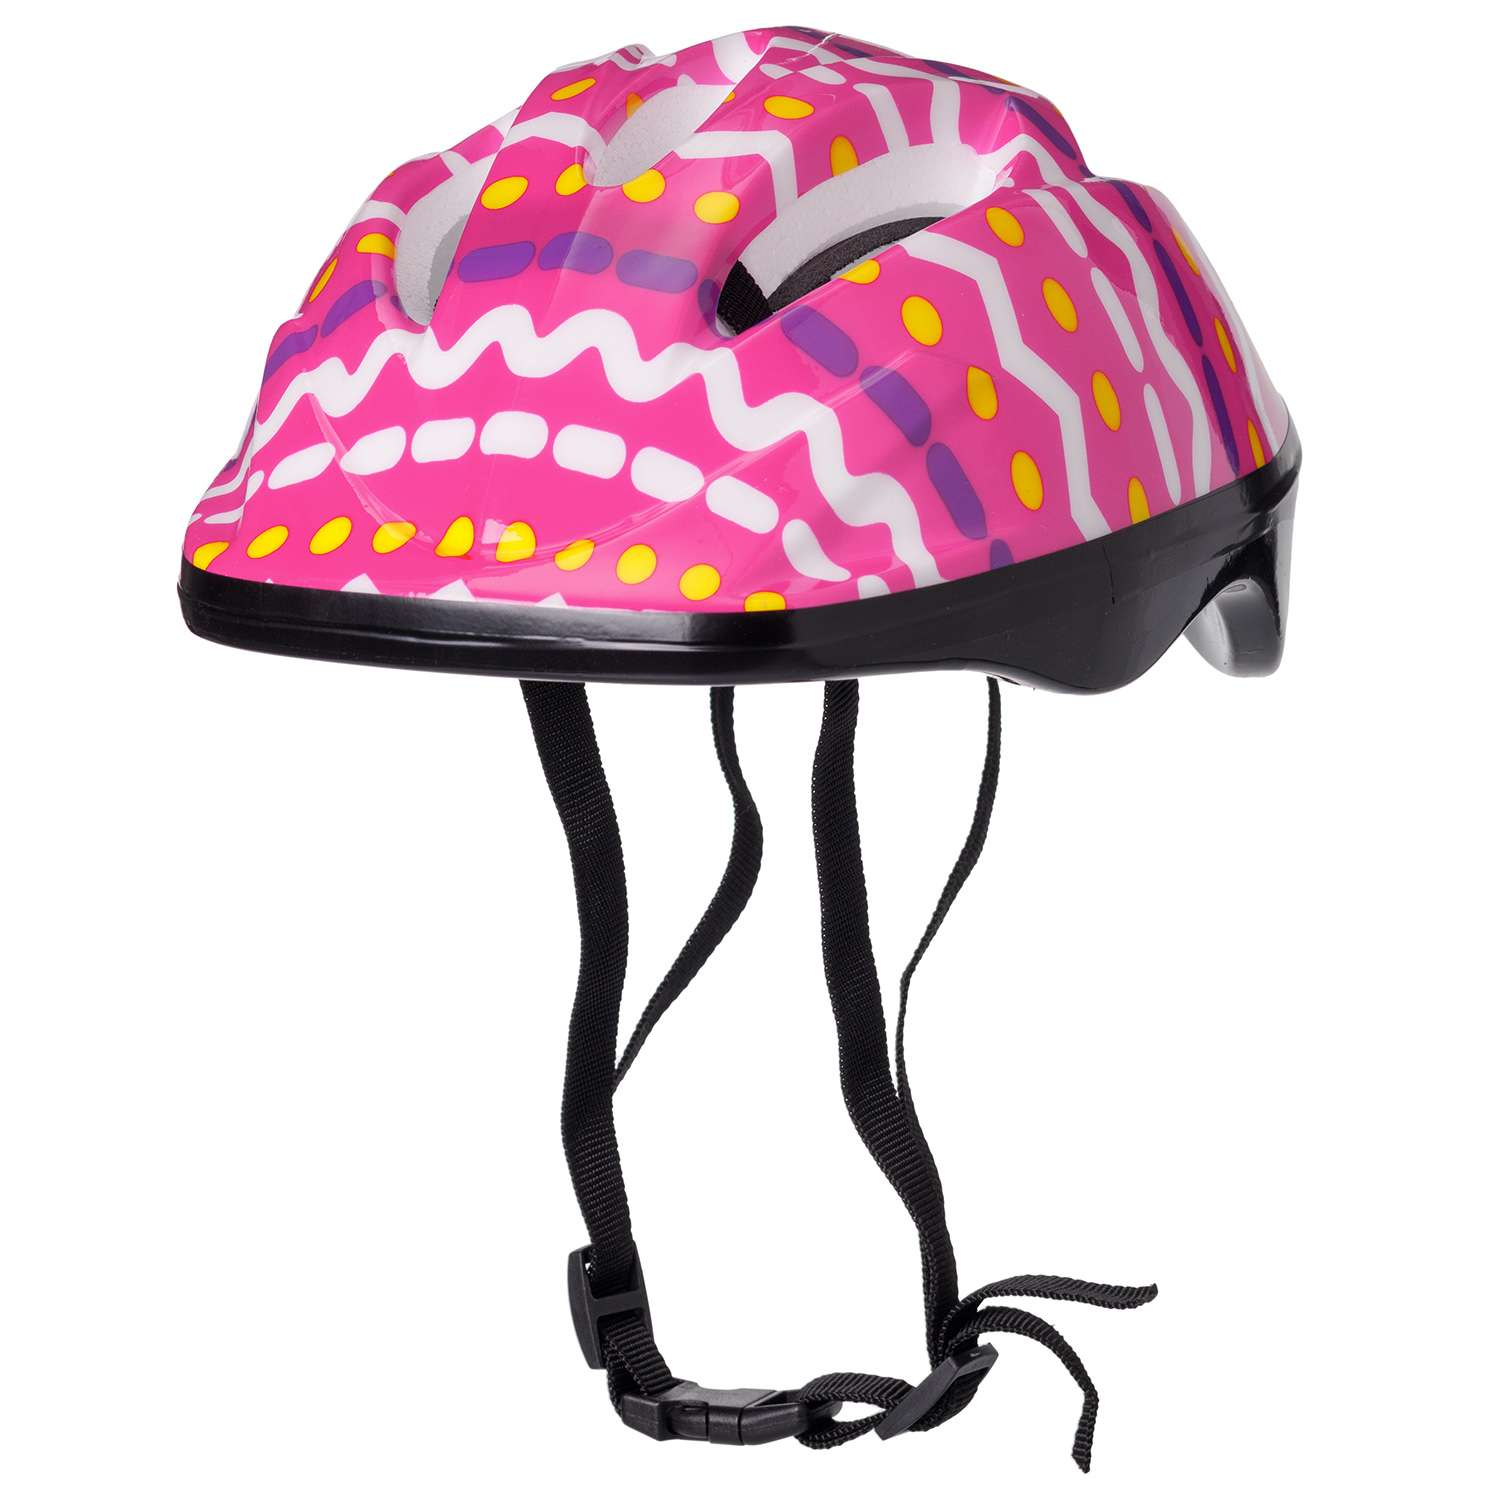 Защита Шлем BABY STYLE для роликовых коньков розовый принт обхват 57 см - фото 1